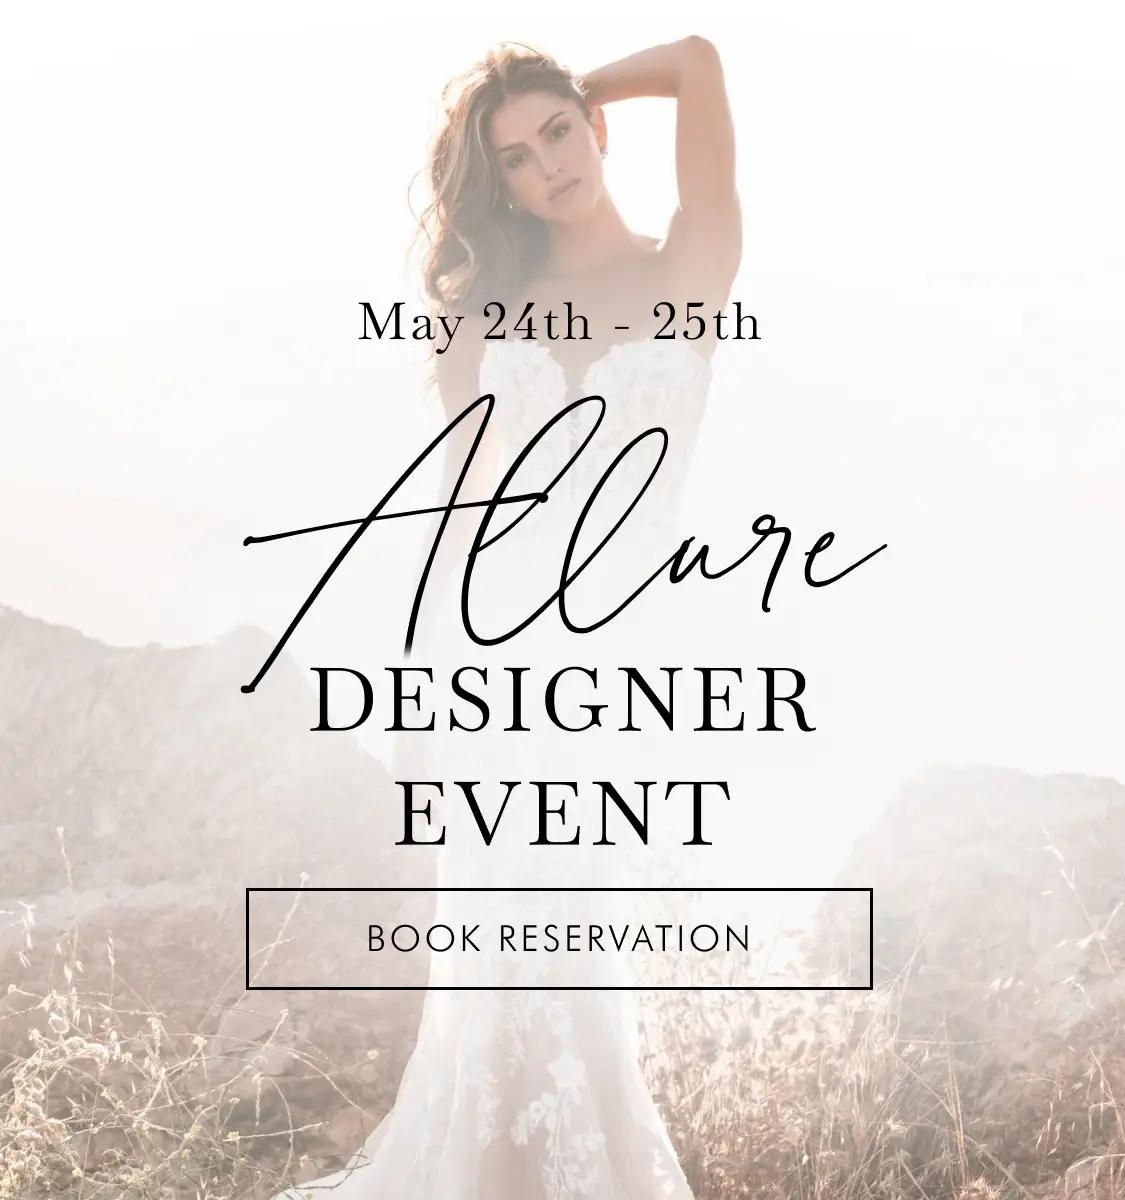 Allure Designer Event mobile banner